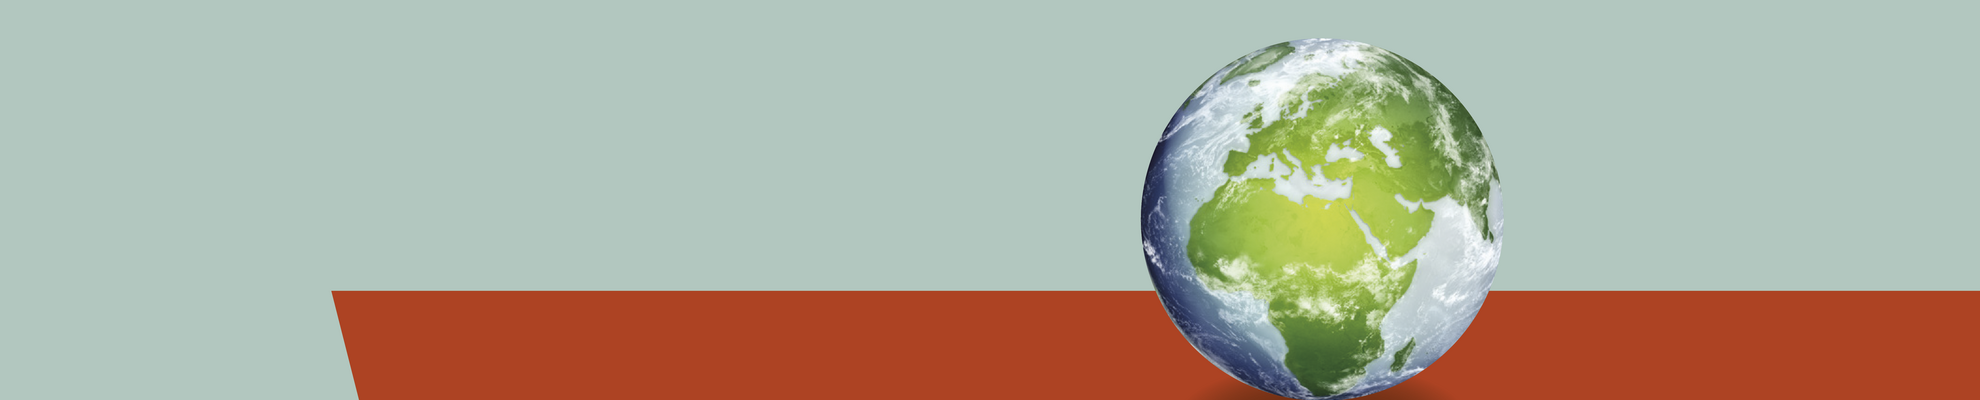 Bild Weltkugel vor grau-orangefarbenem Hintergrund